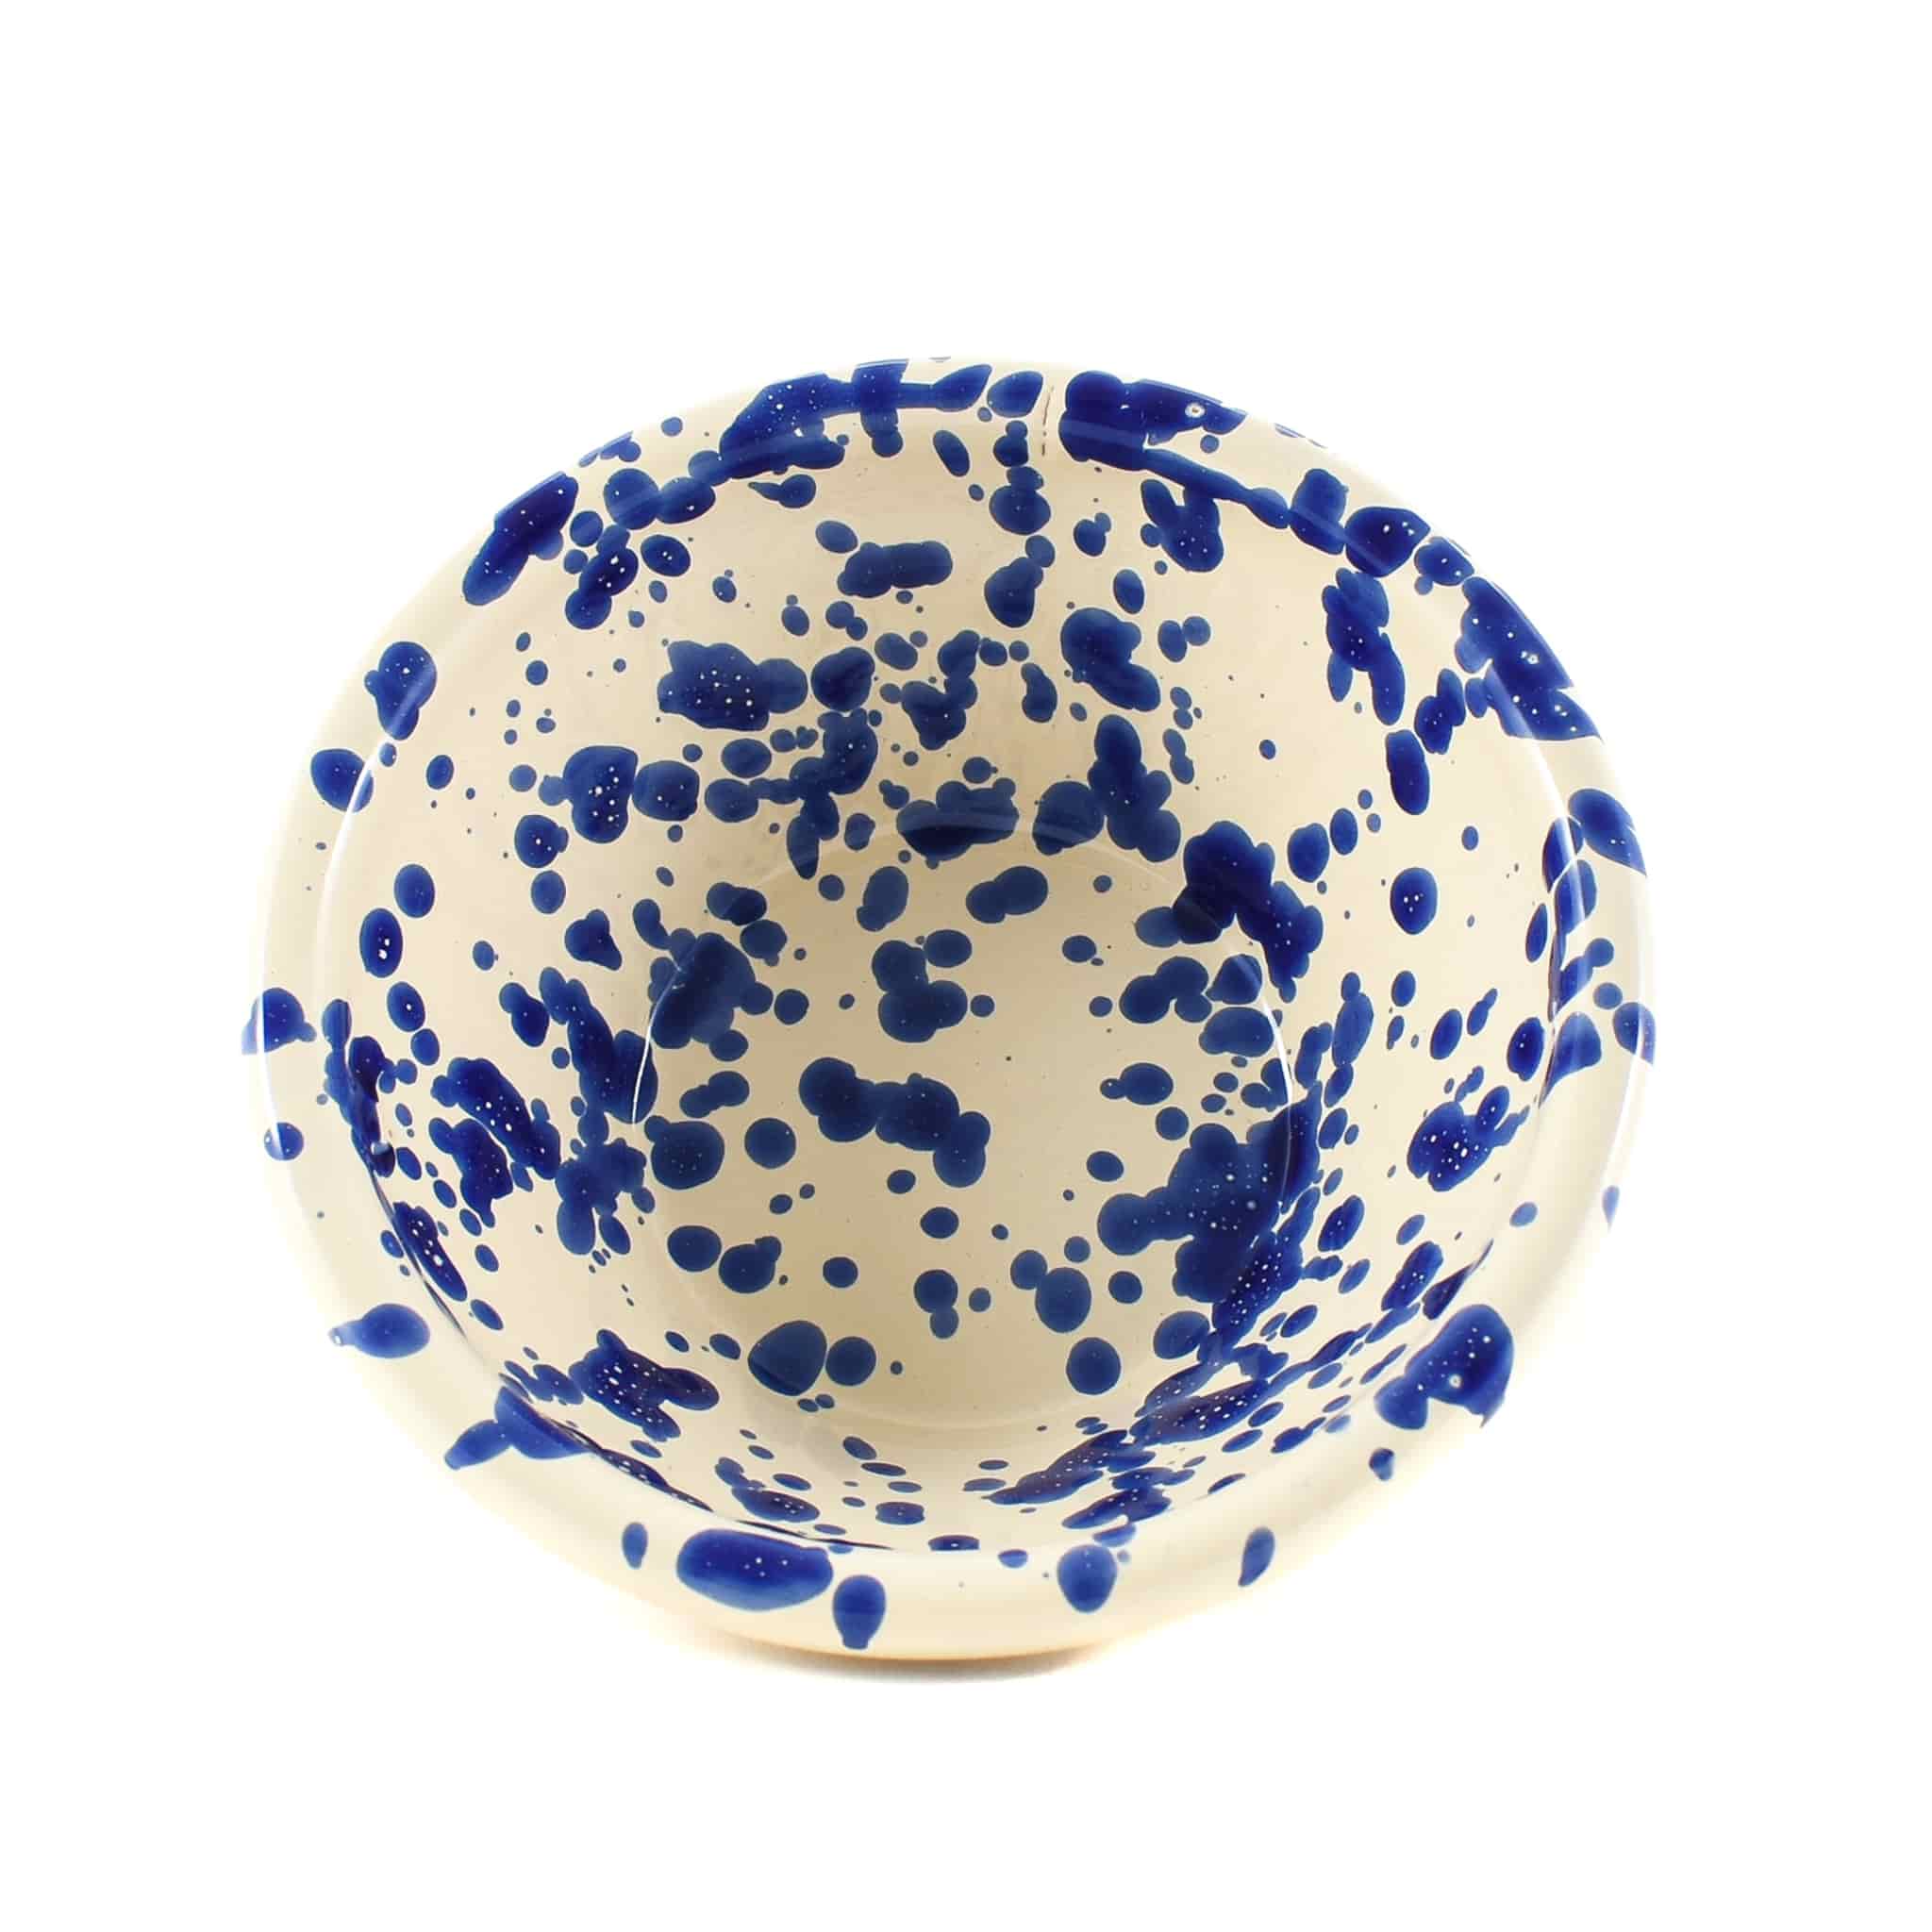 Puglia Blue Splatter Bowl 12cm angled